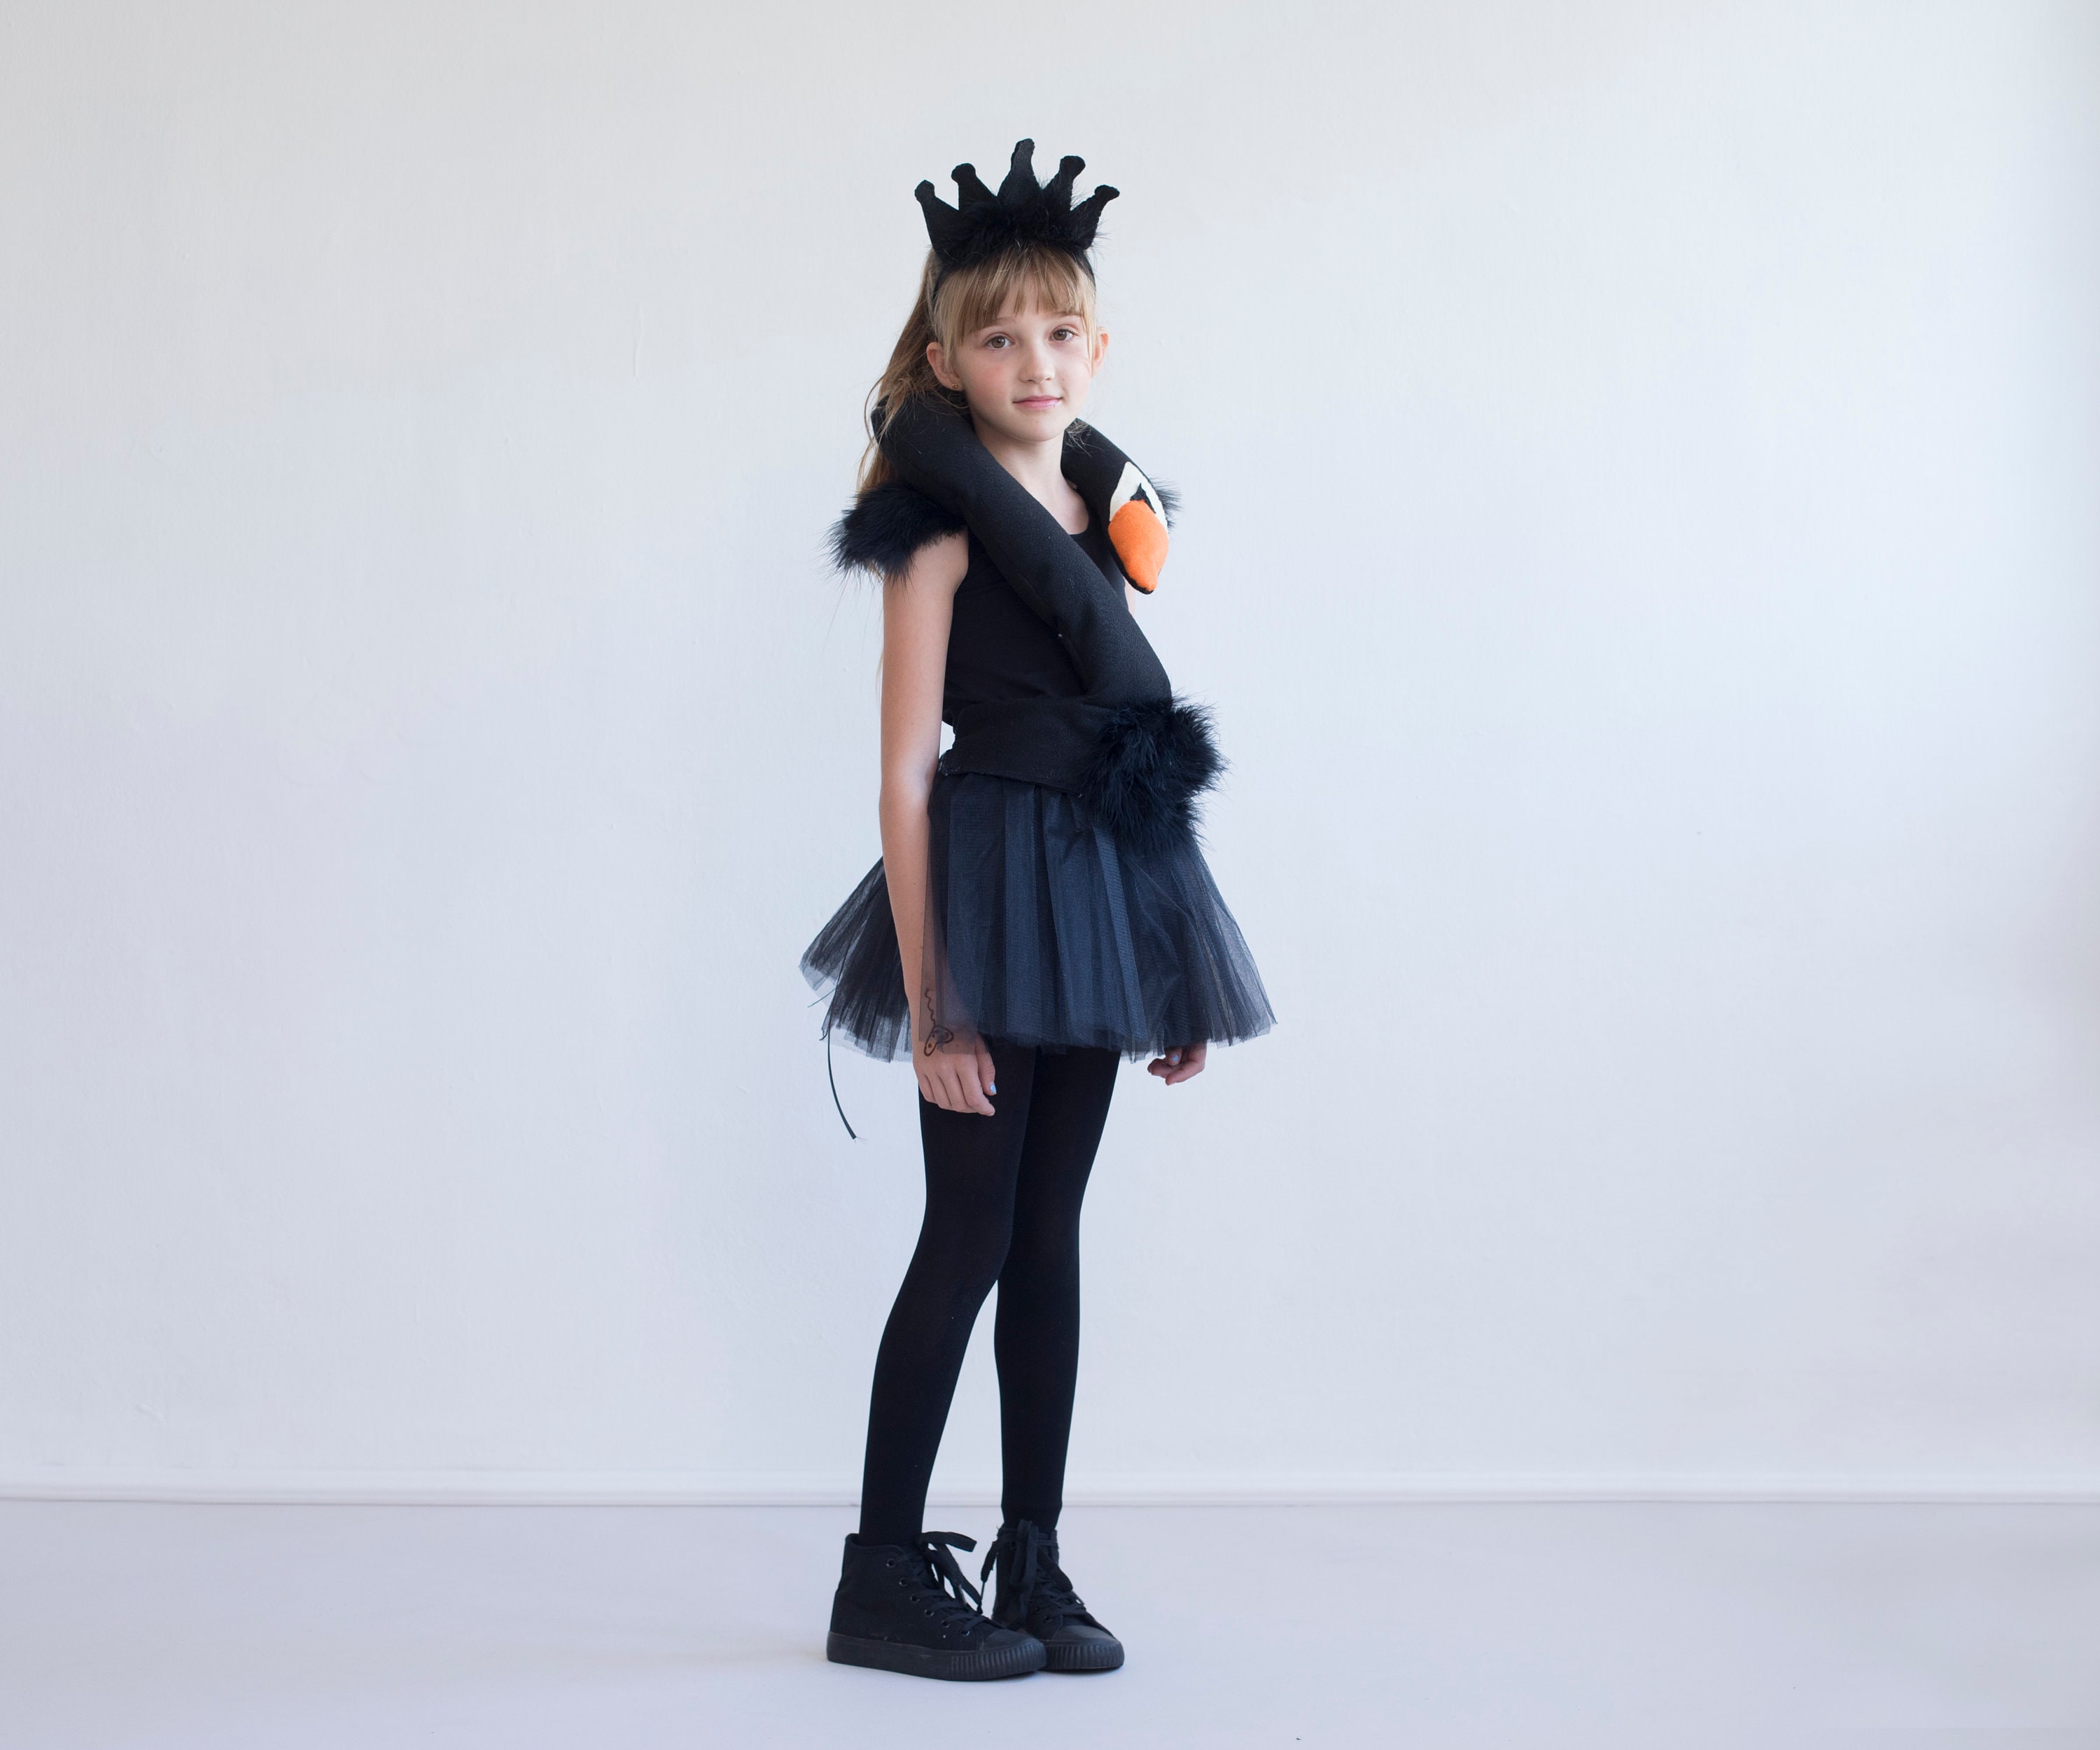 Black Costume for Halloween Toddler Girls Costume | Etsy